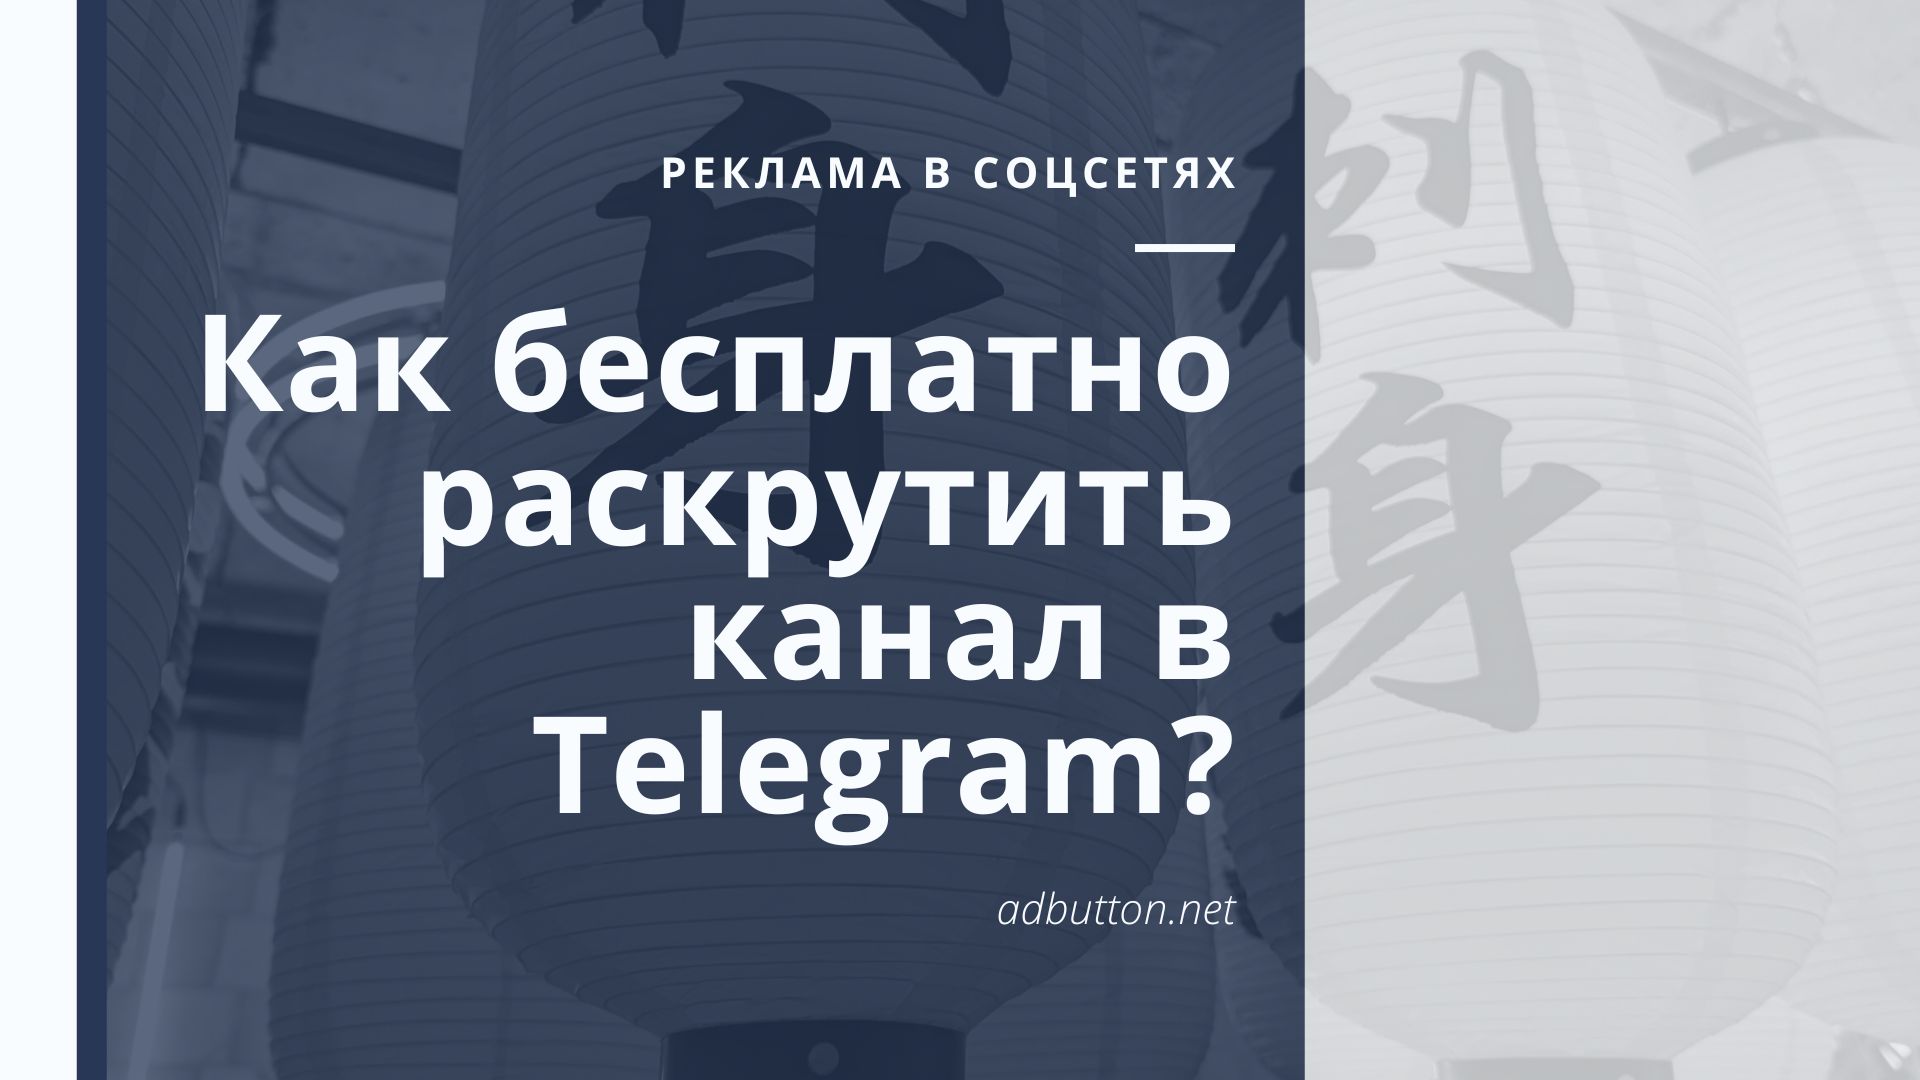 Как бесплатно раскрутить и продвинуть канал в Telegram?